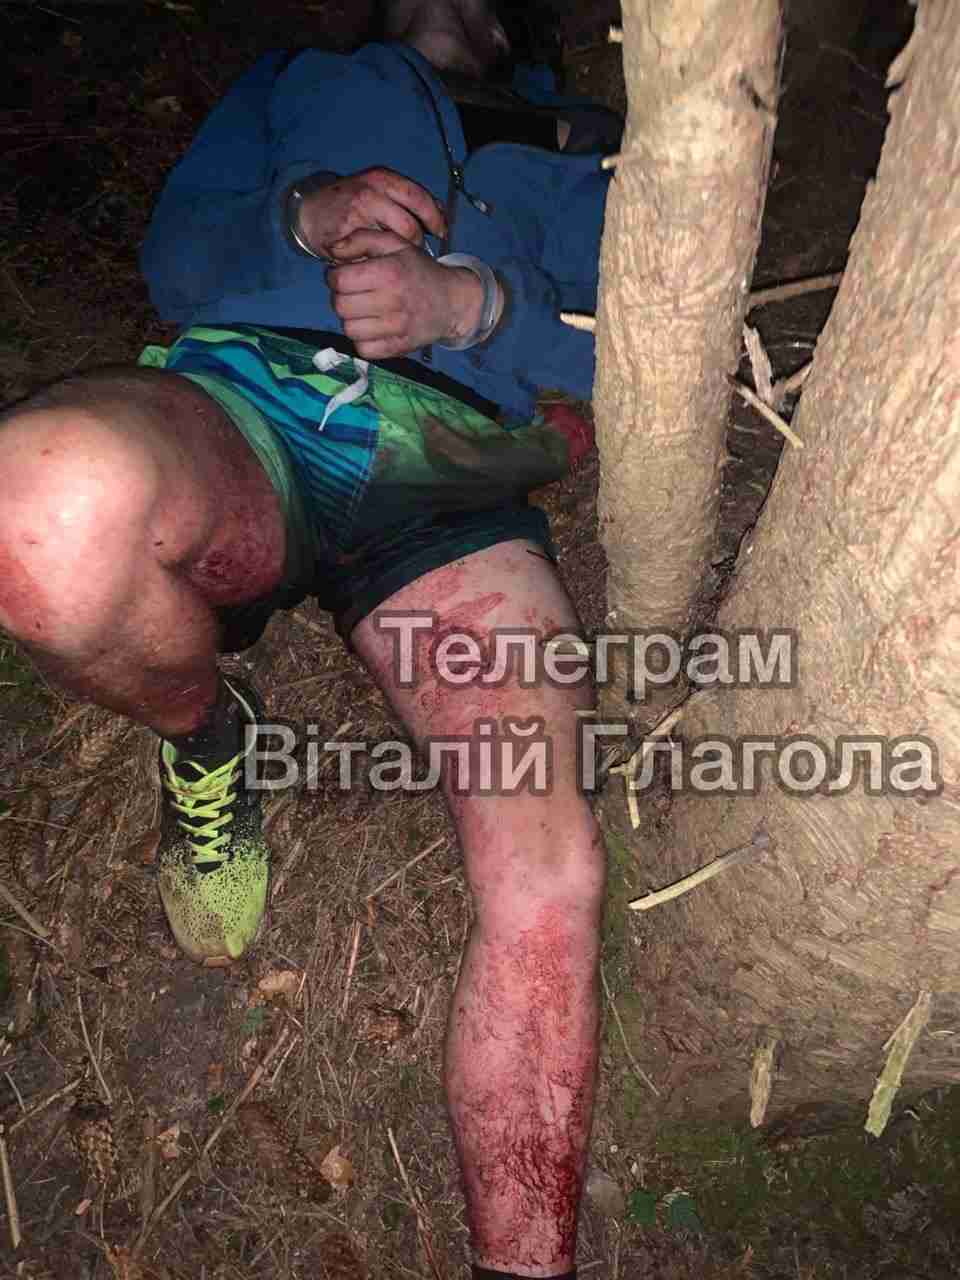 Напад на прикордонника: на Буковині застрелили порушника під час спроби перетину кордону (18+)